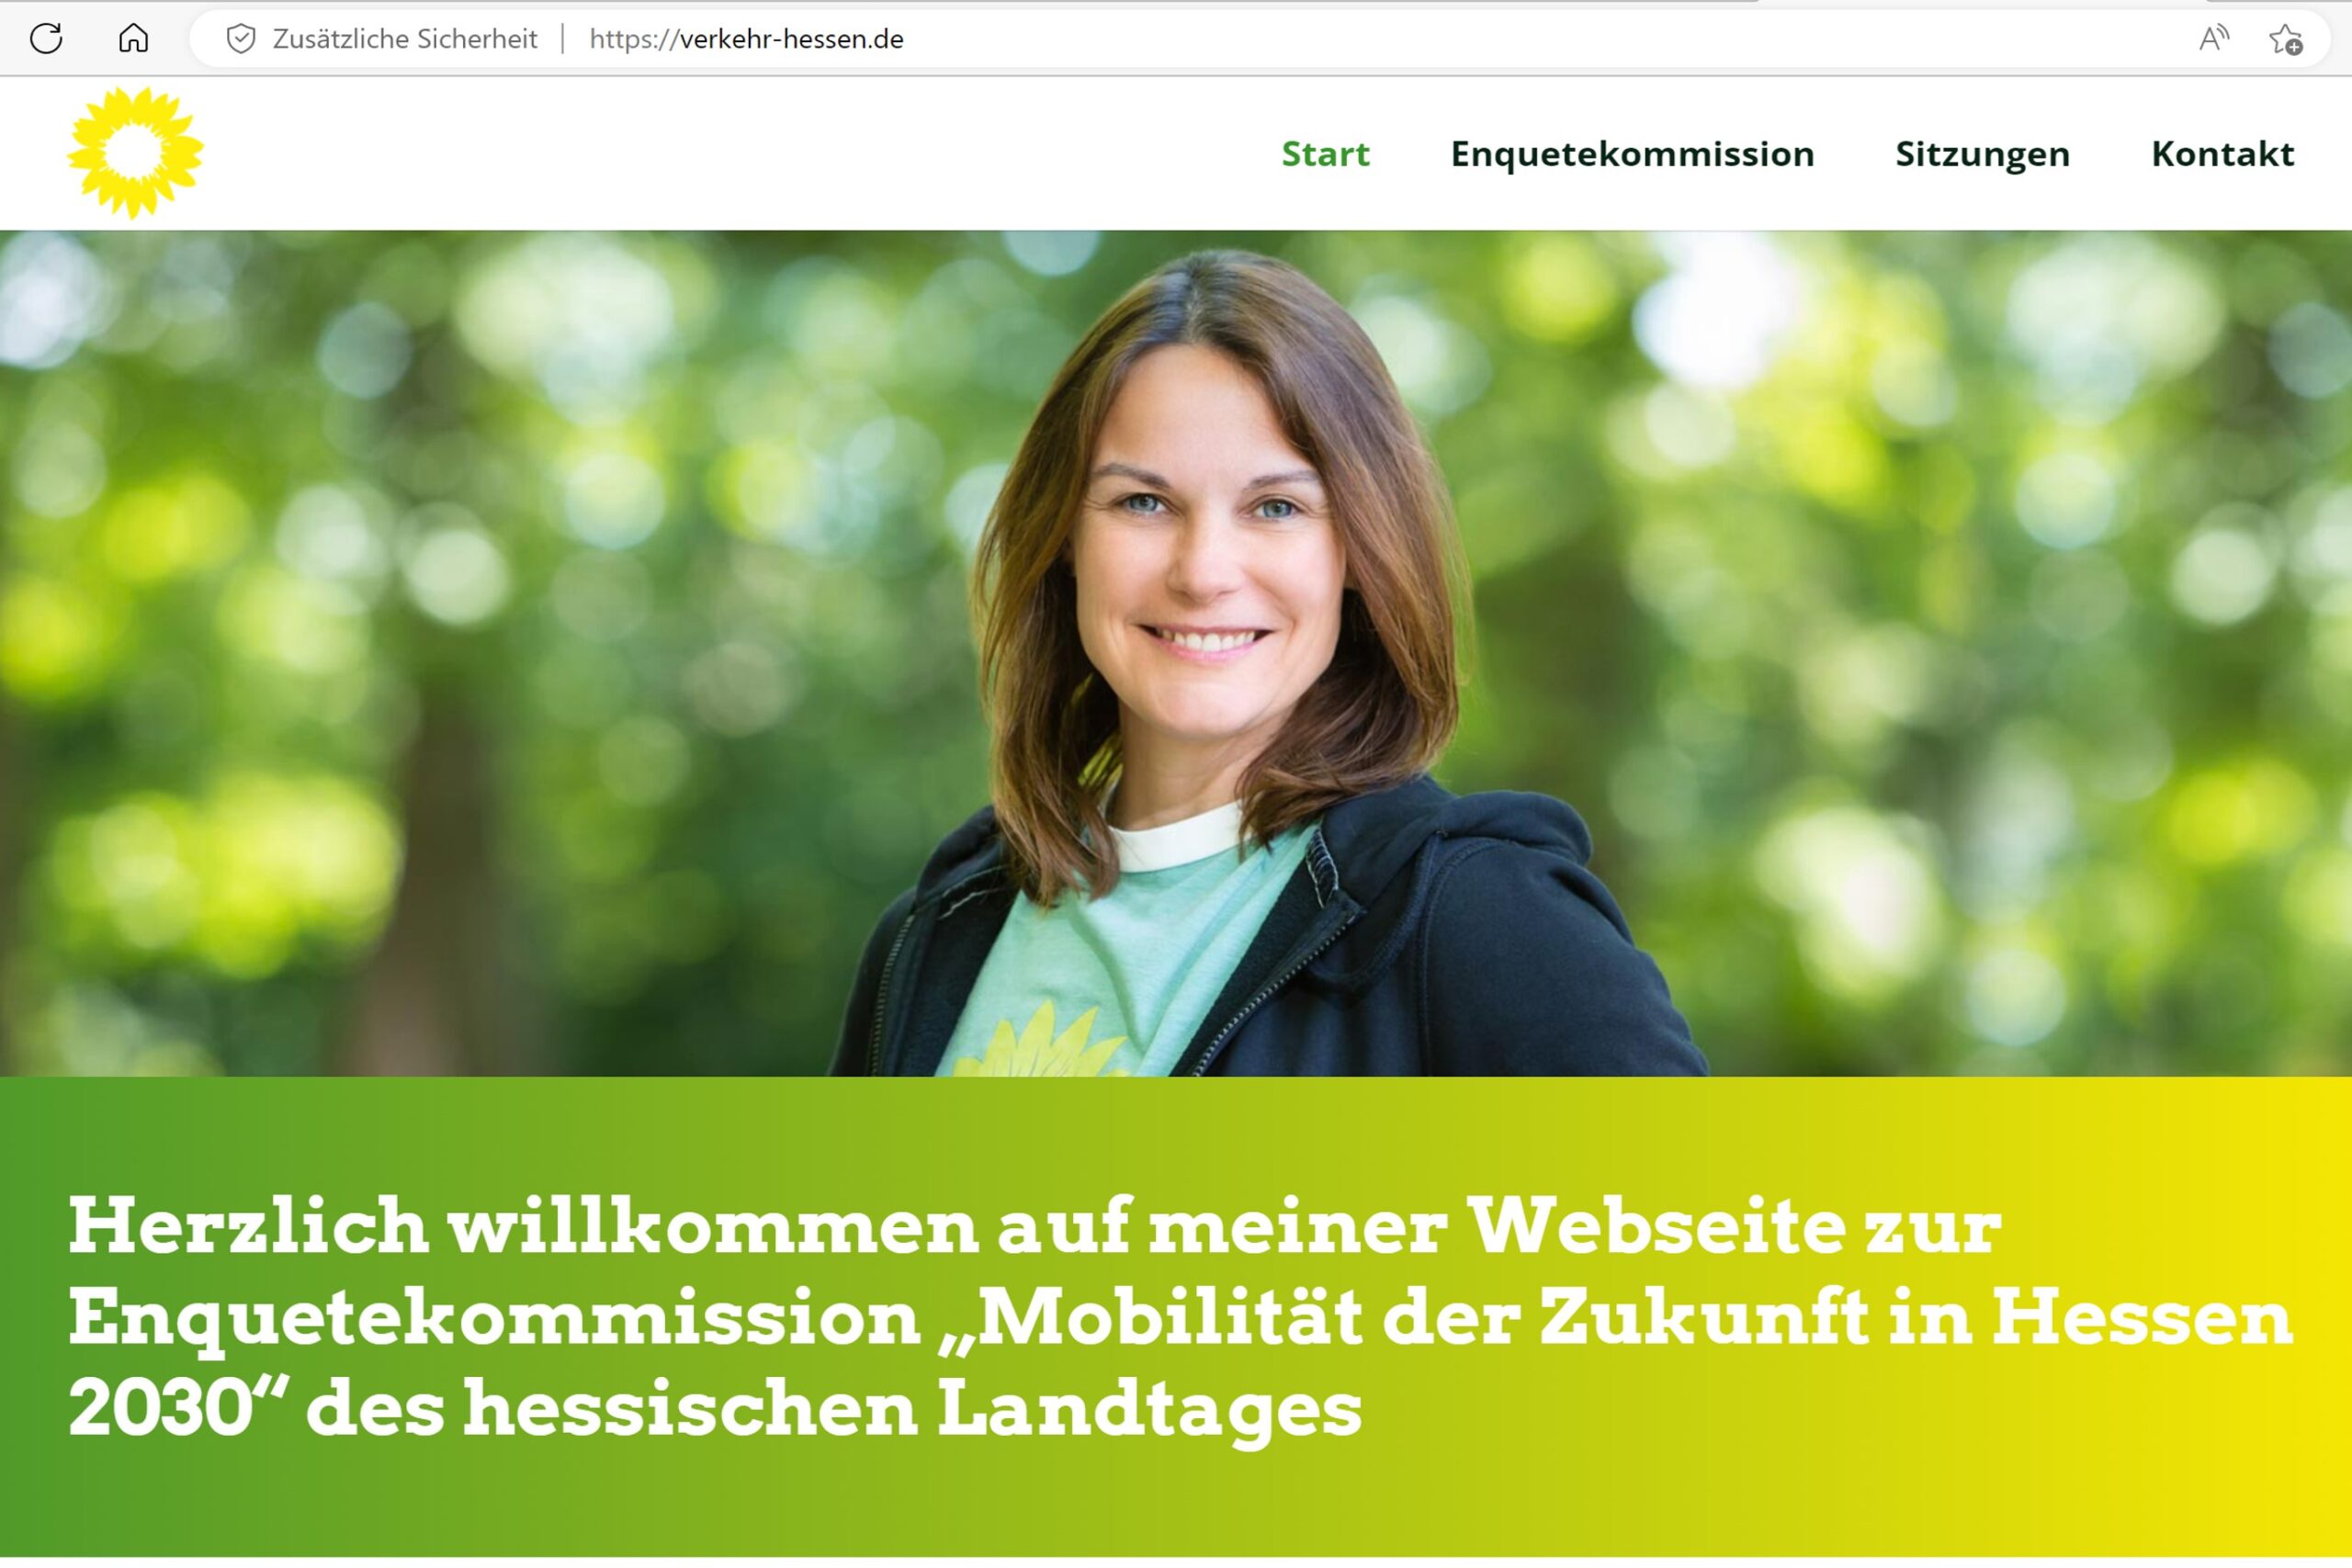 Startseite von Katys neuer Webseite zur Arbeit der Enquetekommission Mobilität